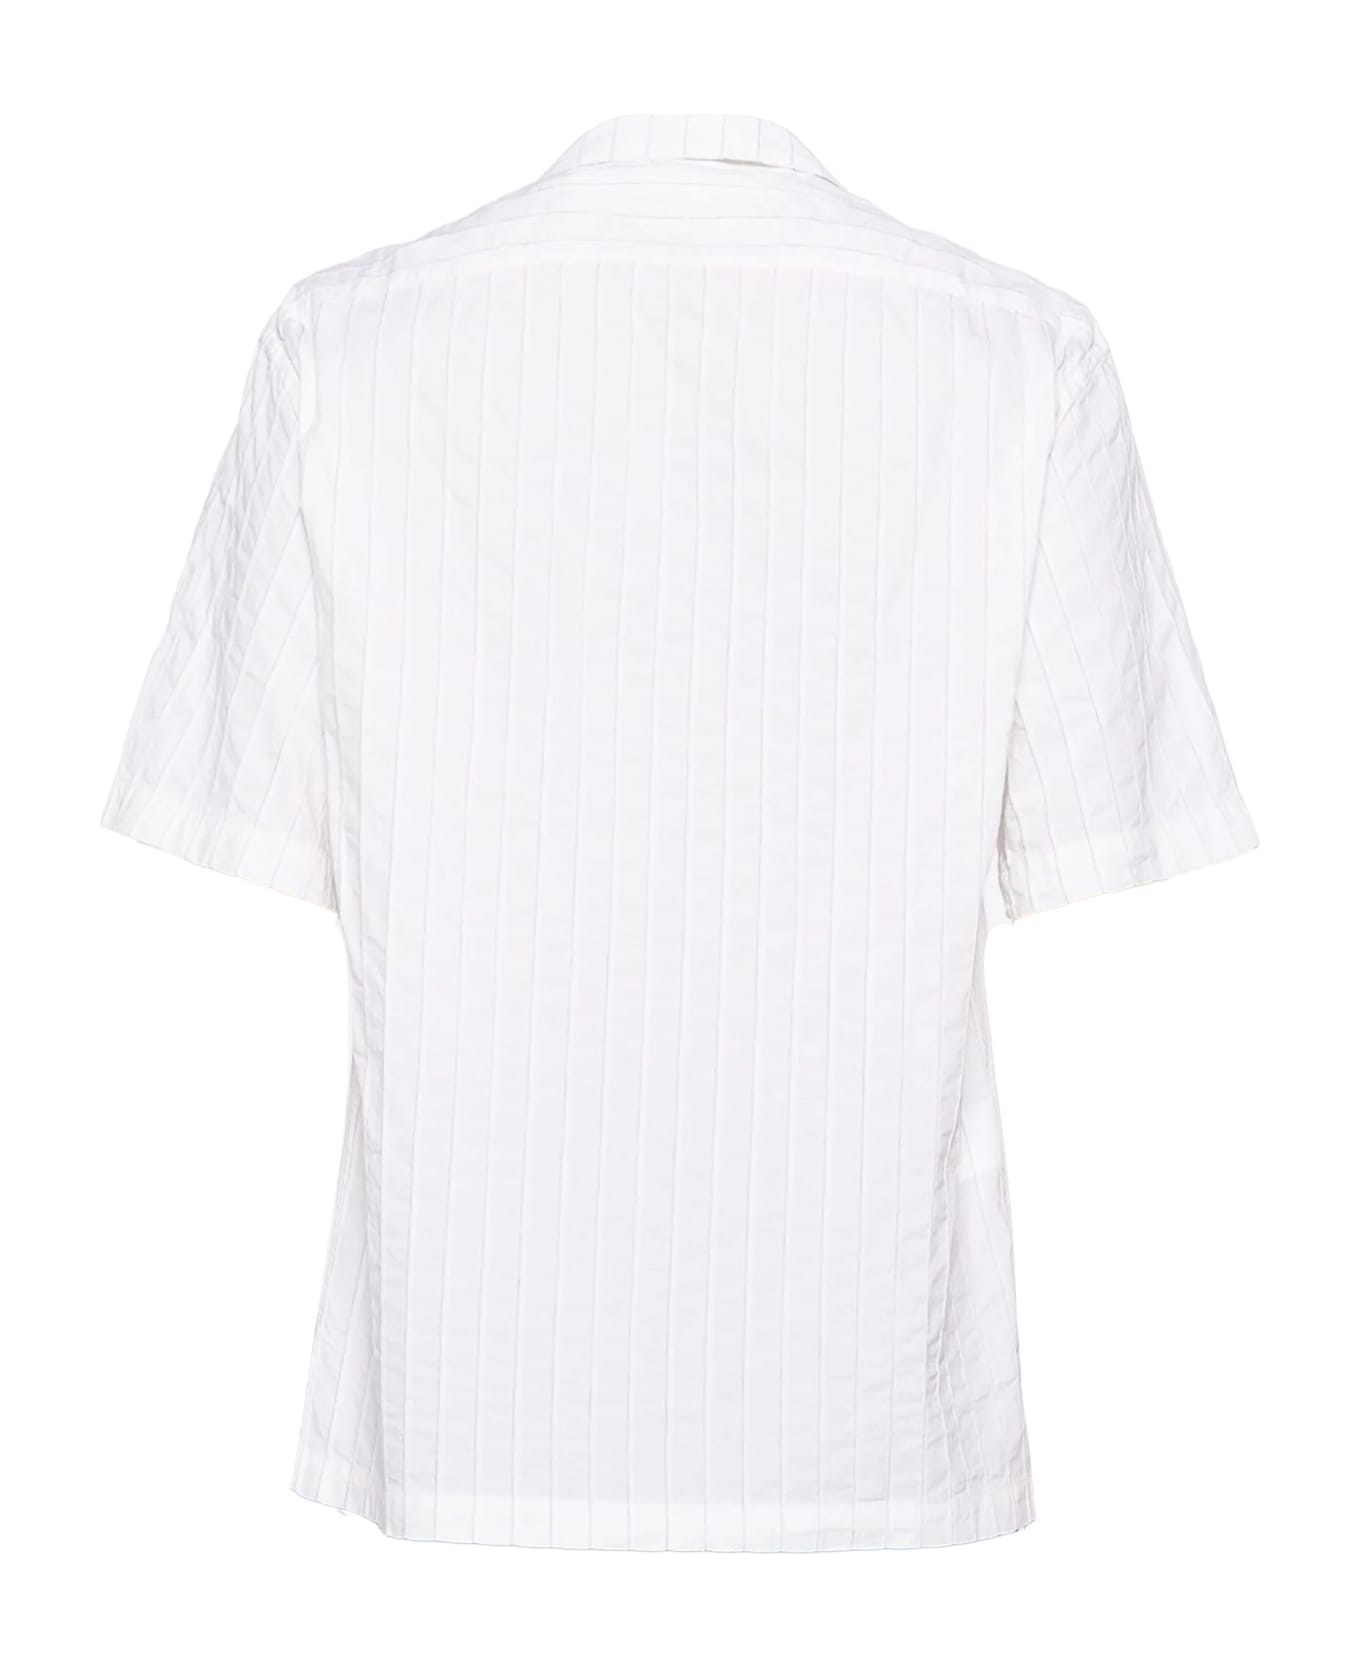 Barena Shirts White - White シャツ